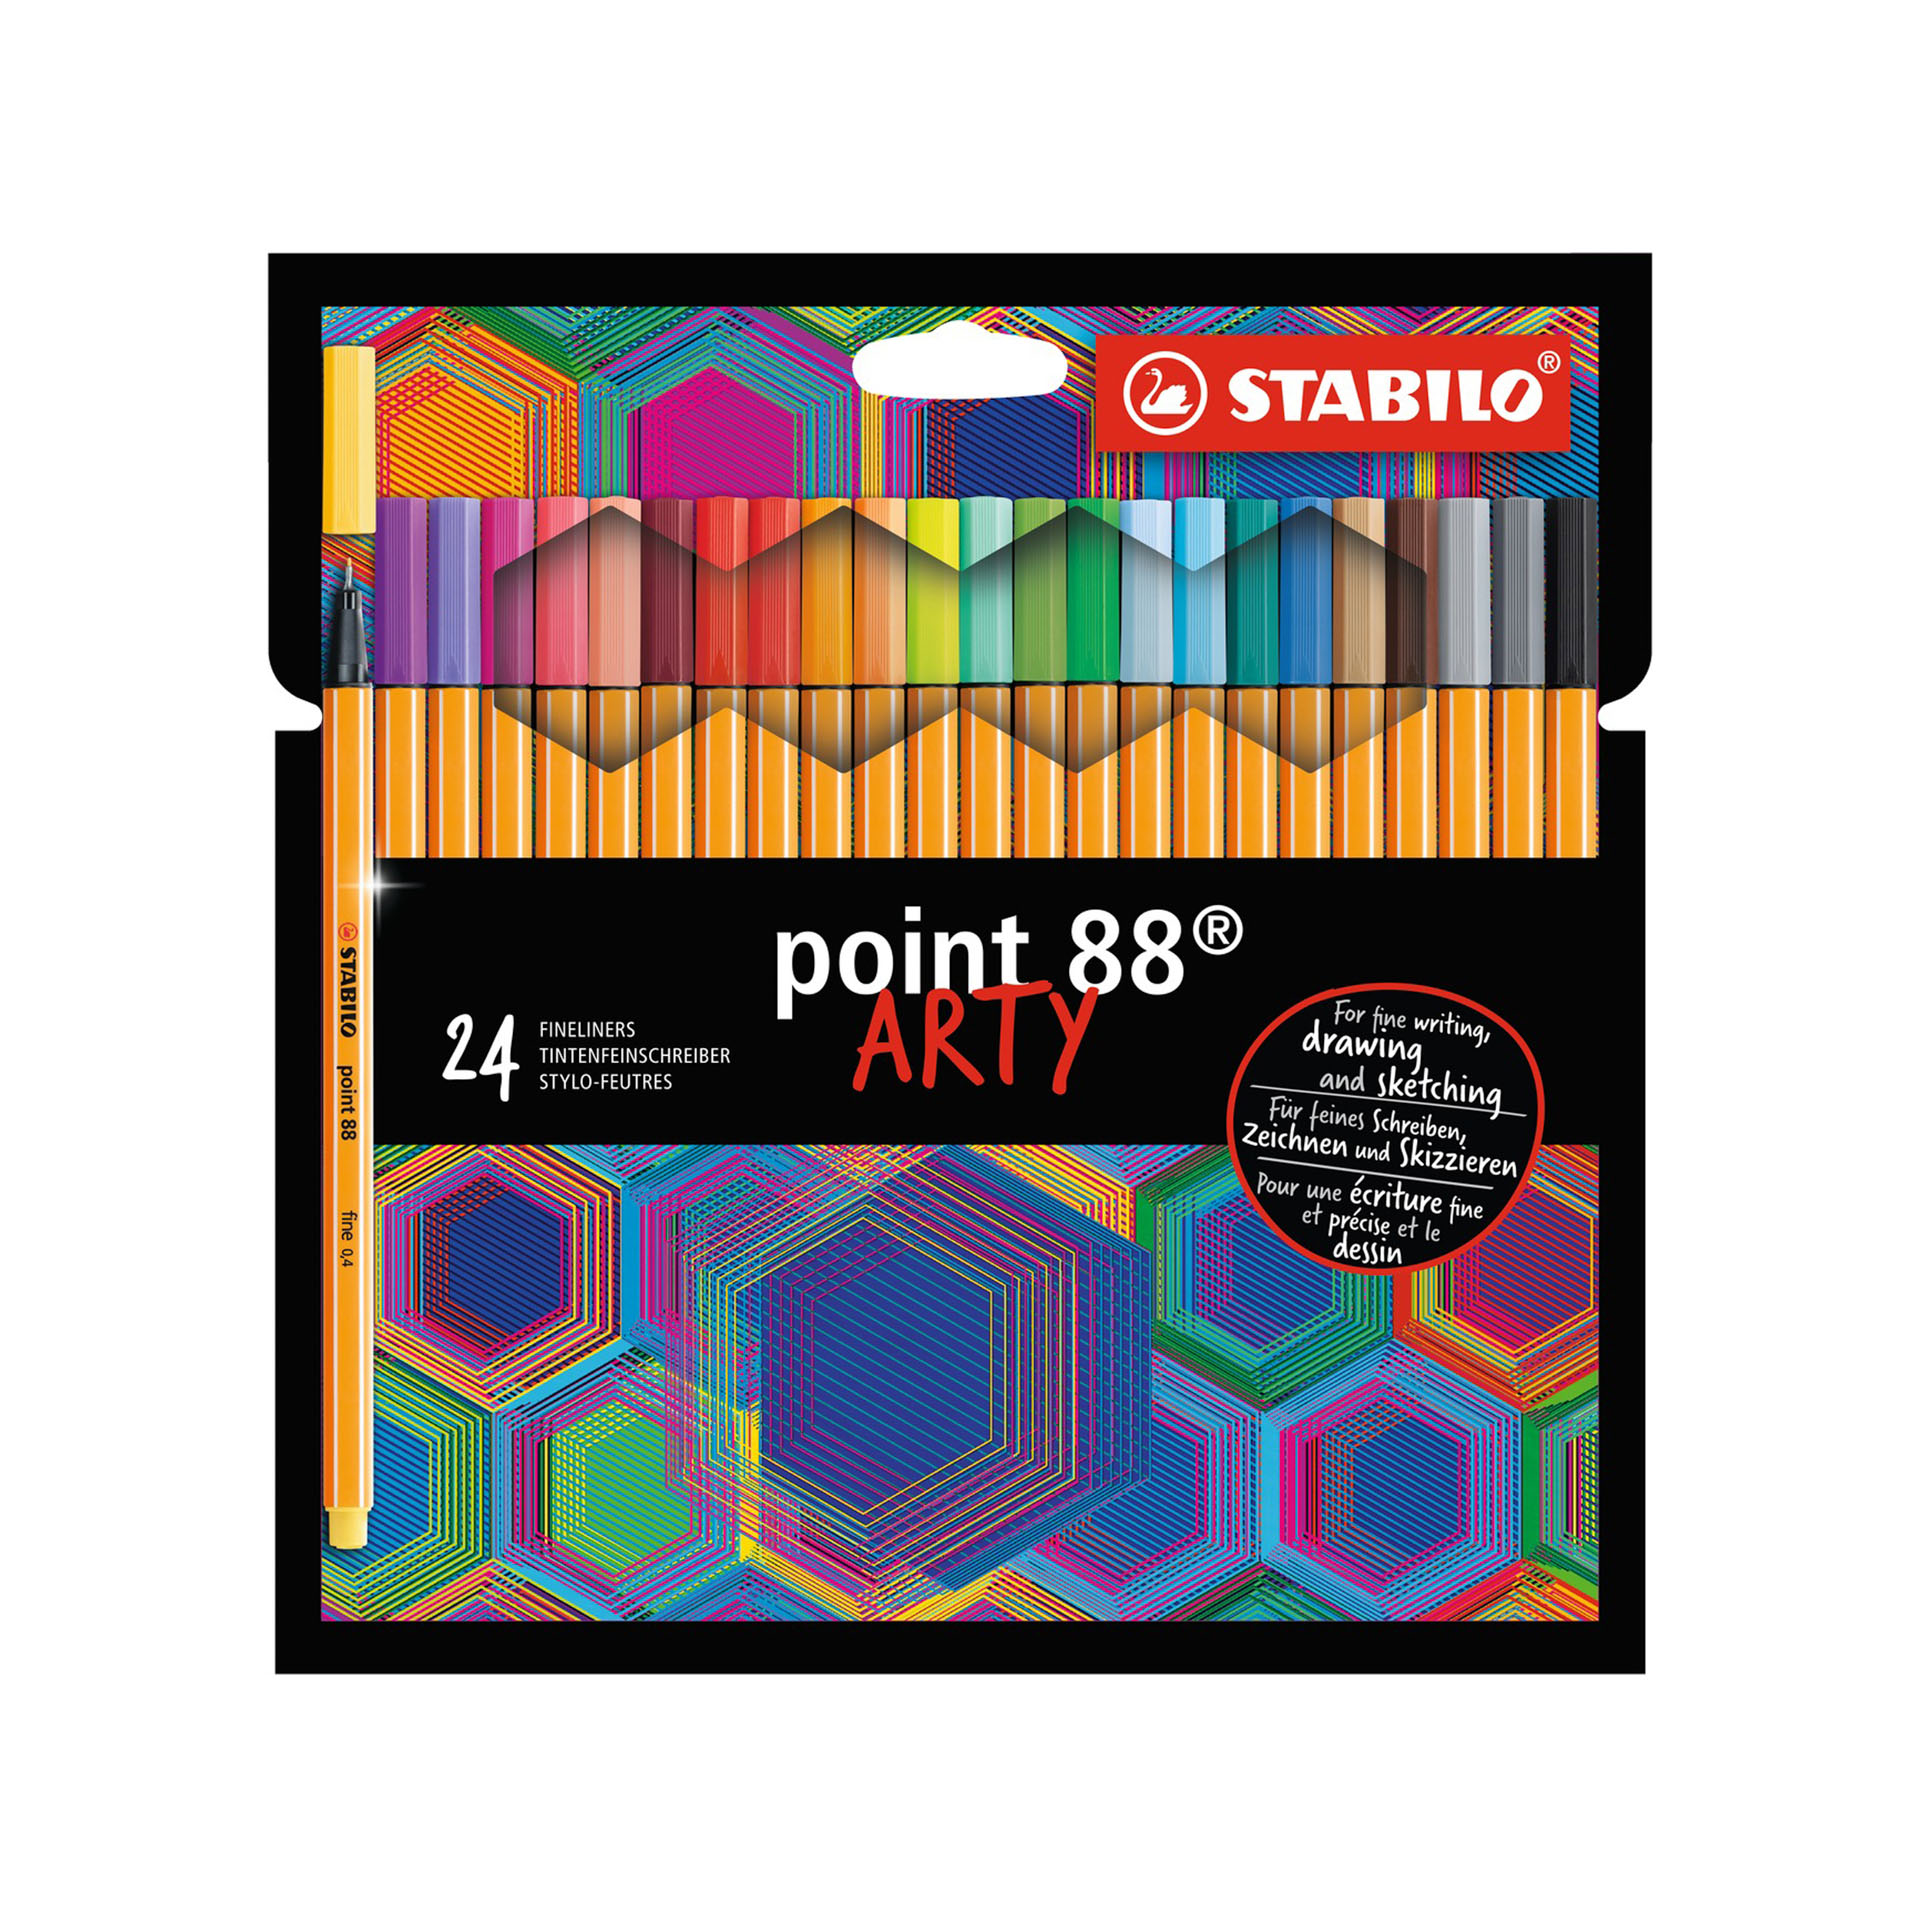 Fineliner - STABILO point 88 - ARTY - Astuccio da 24 con appendino, , large